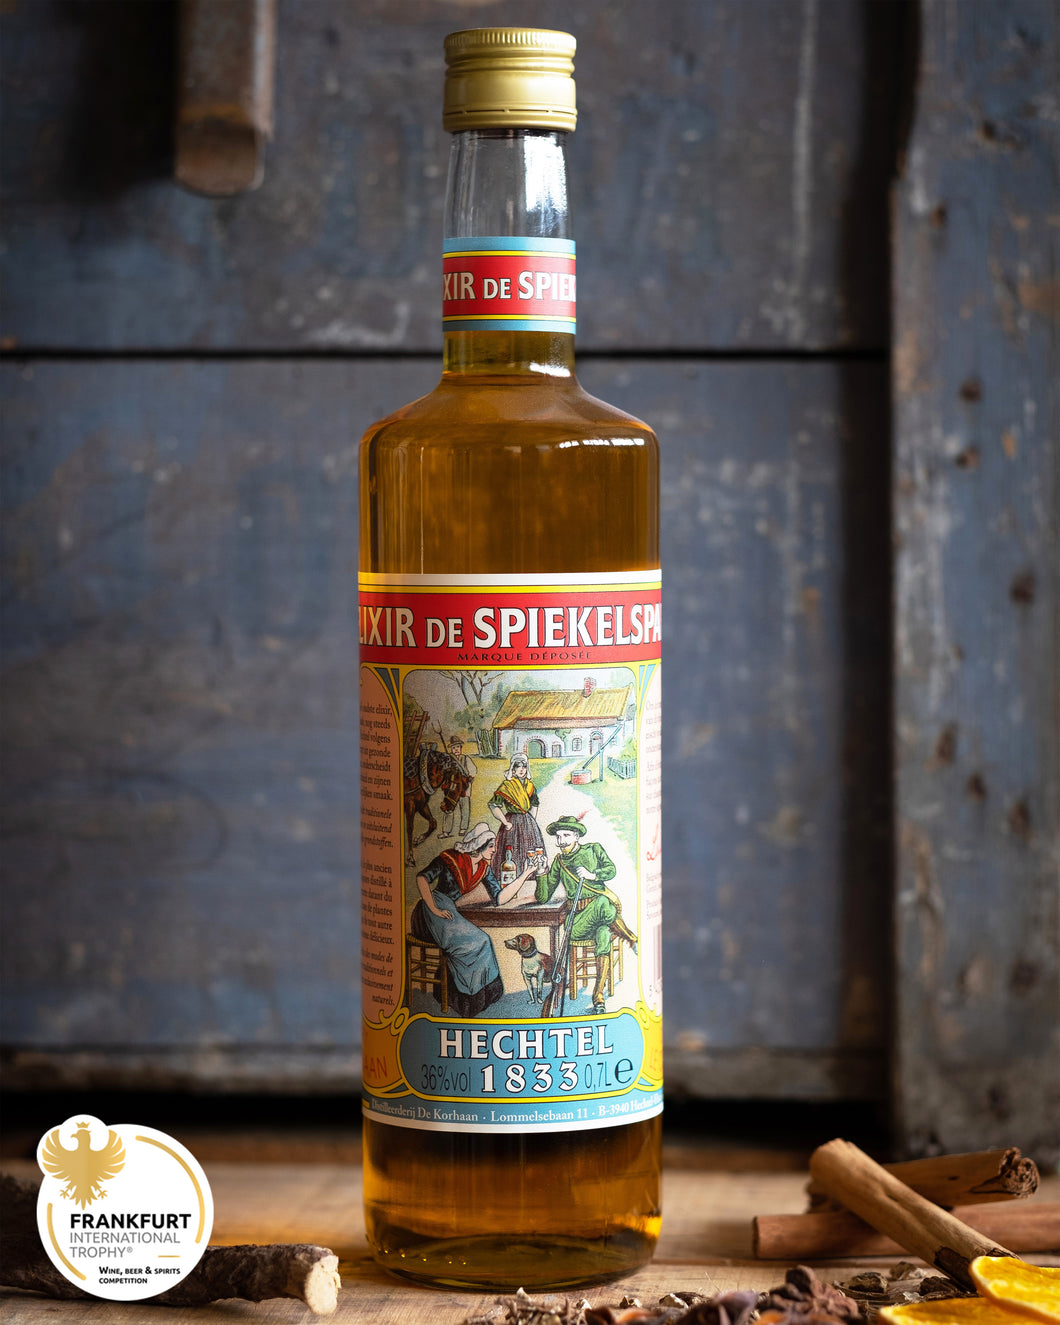 Korhaan-distilleerderij-hechtel-elixir-de-spiekelspade-likeur-handmade-in-belgium